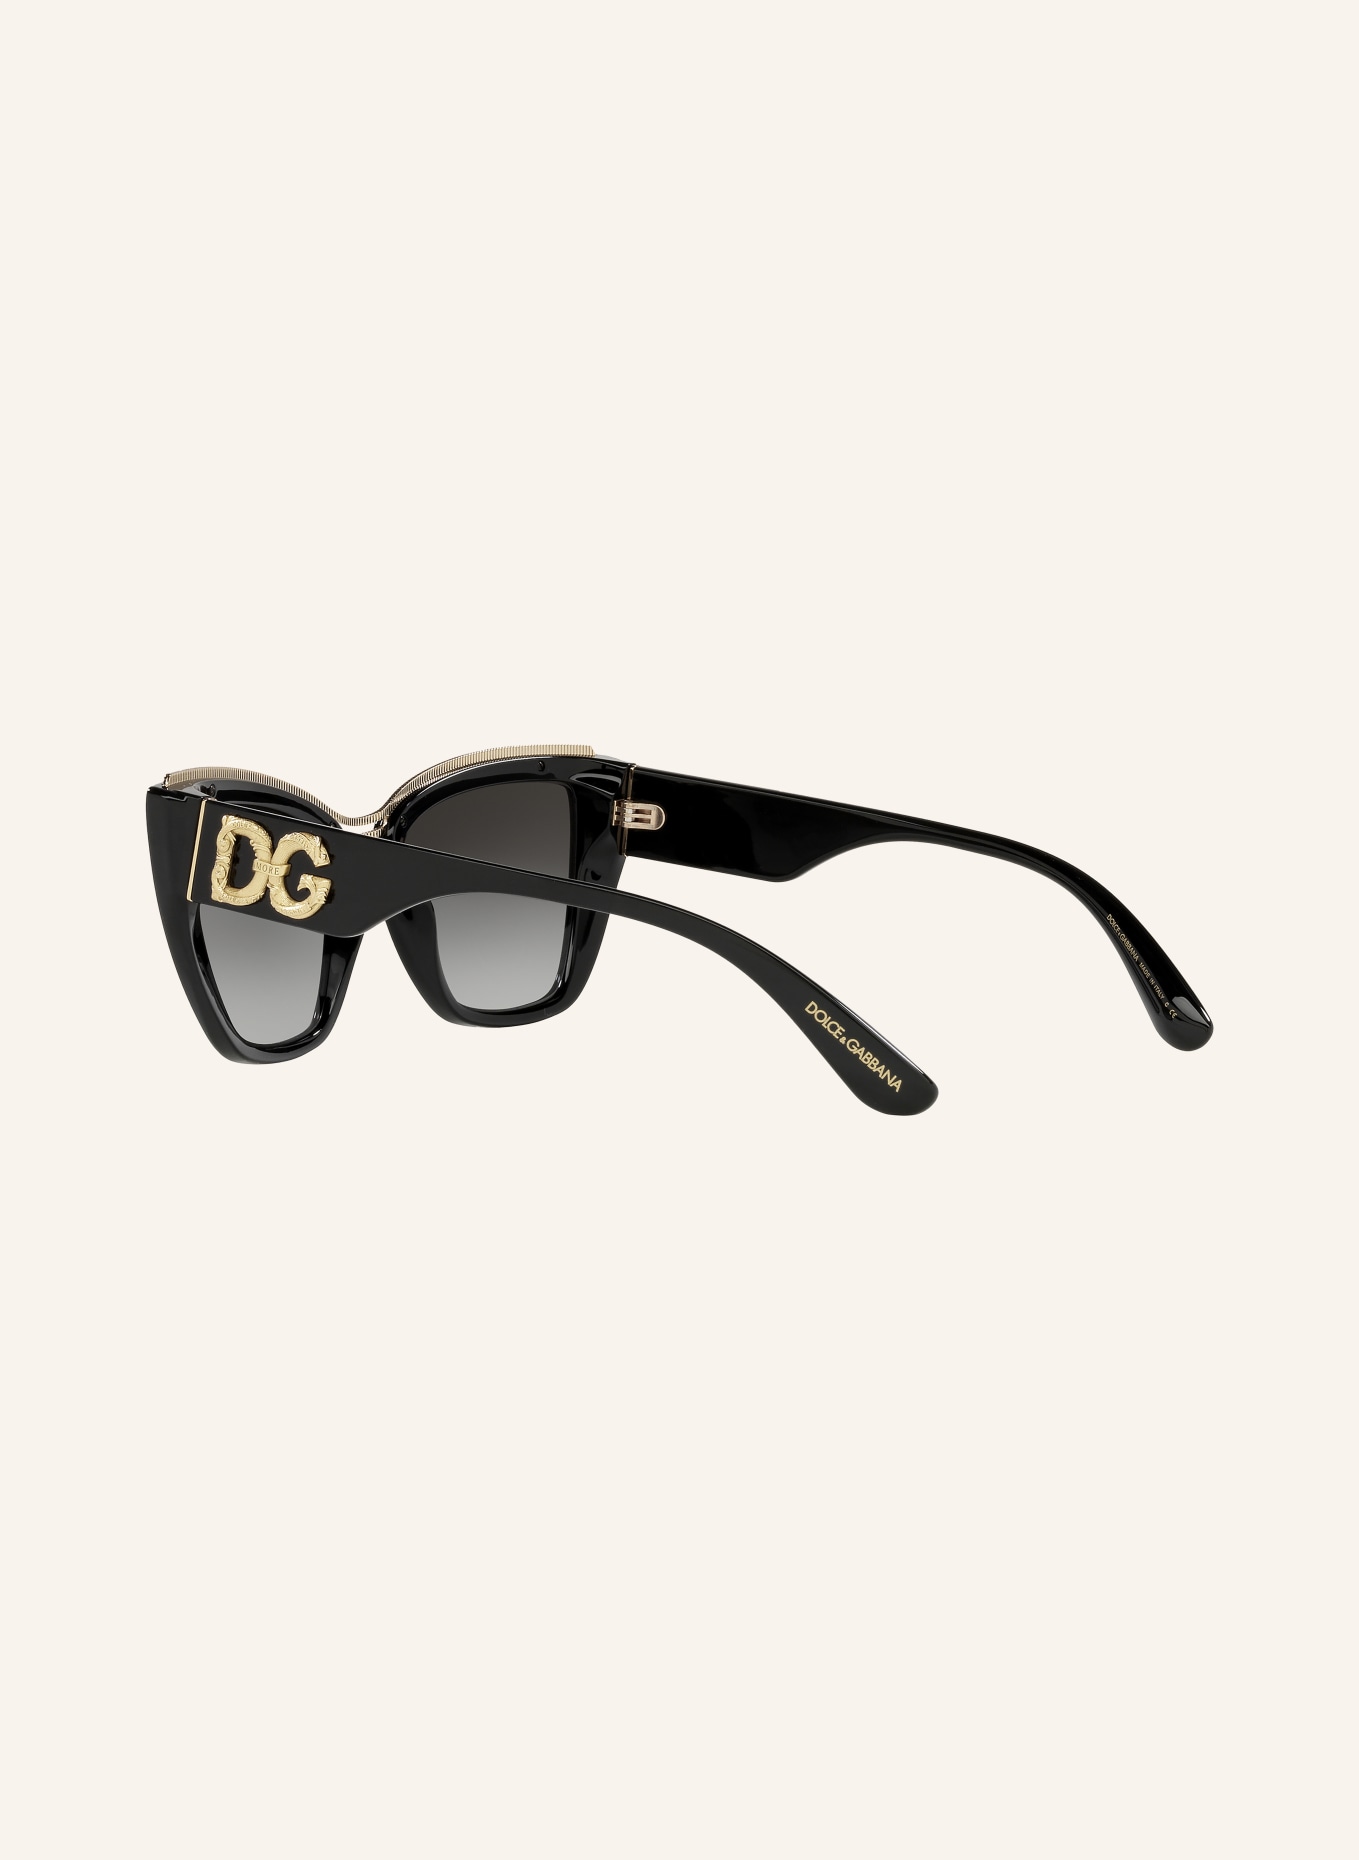 DOLCE & GABBANA Sunglasses DG6144, Color: 501/8G - BLACK/BLACK GRADIENT (Image 4)